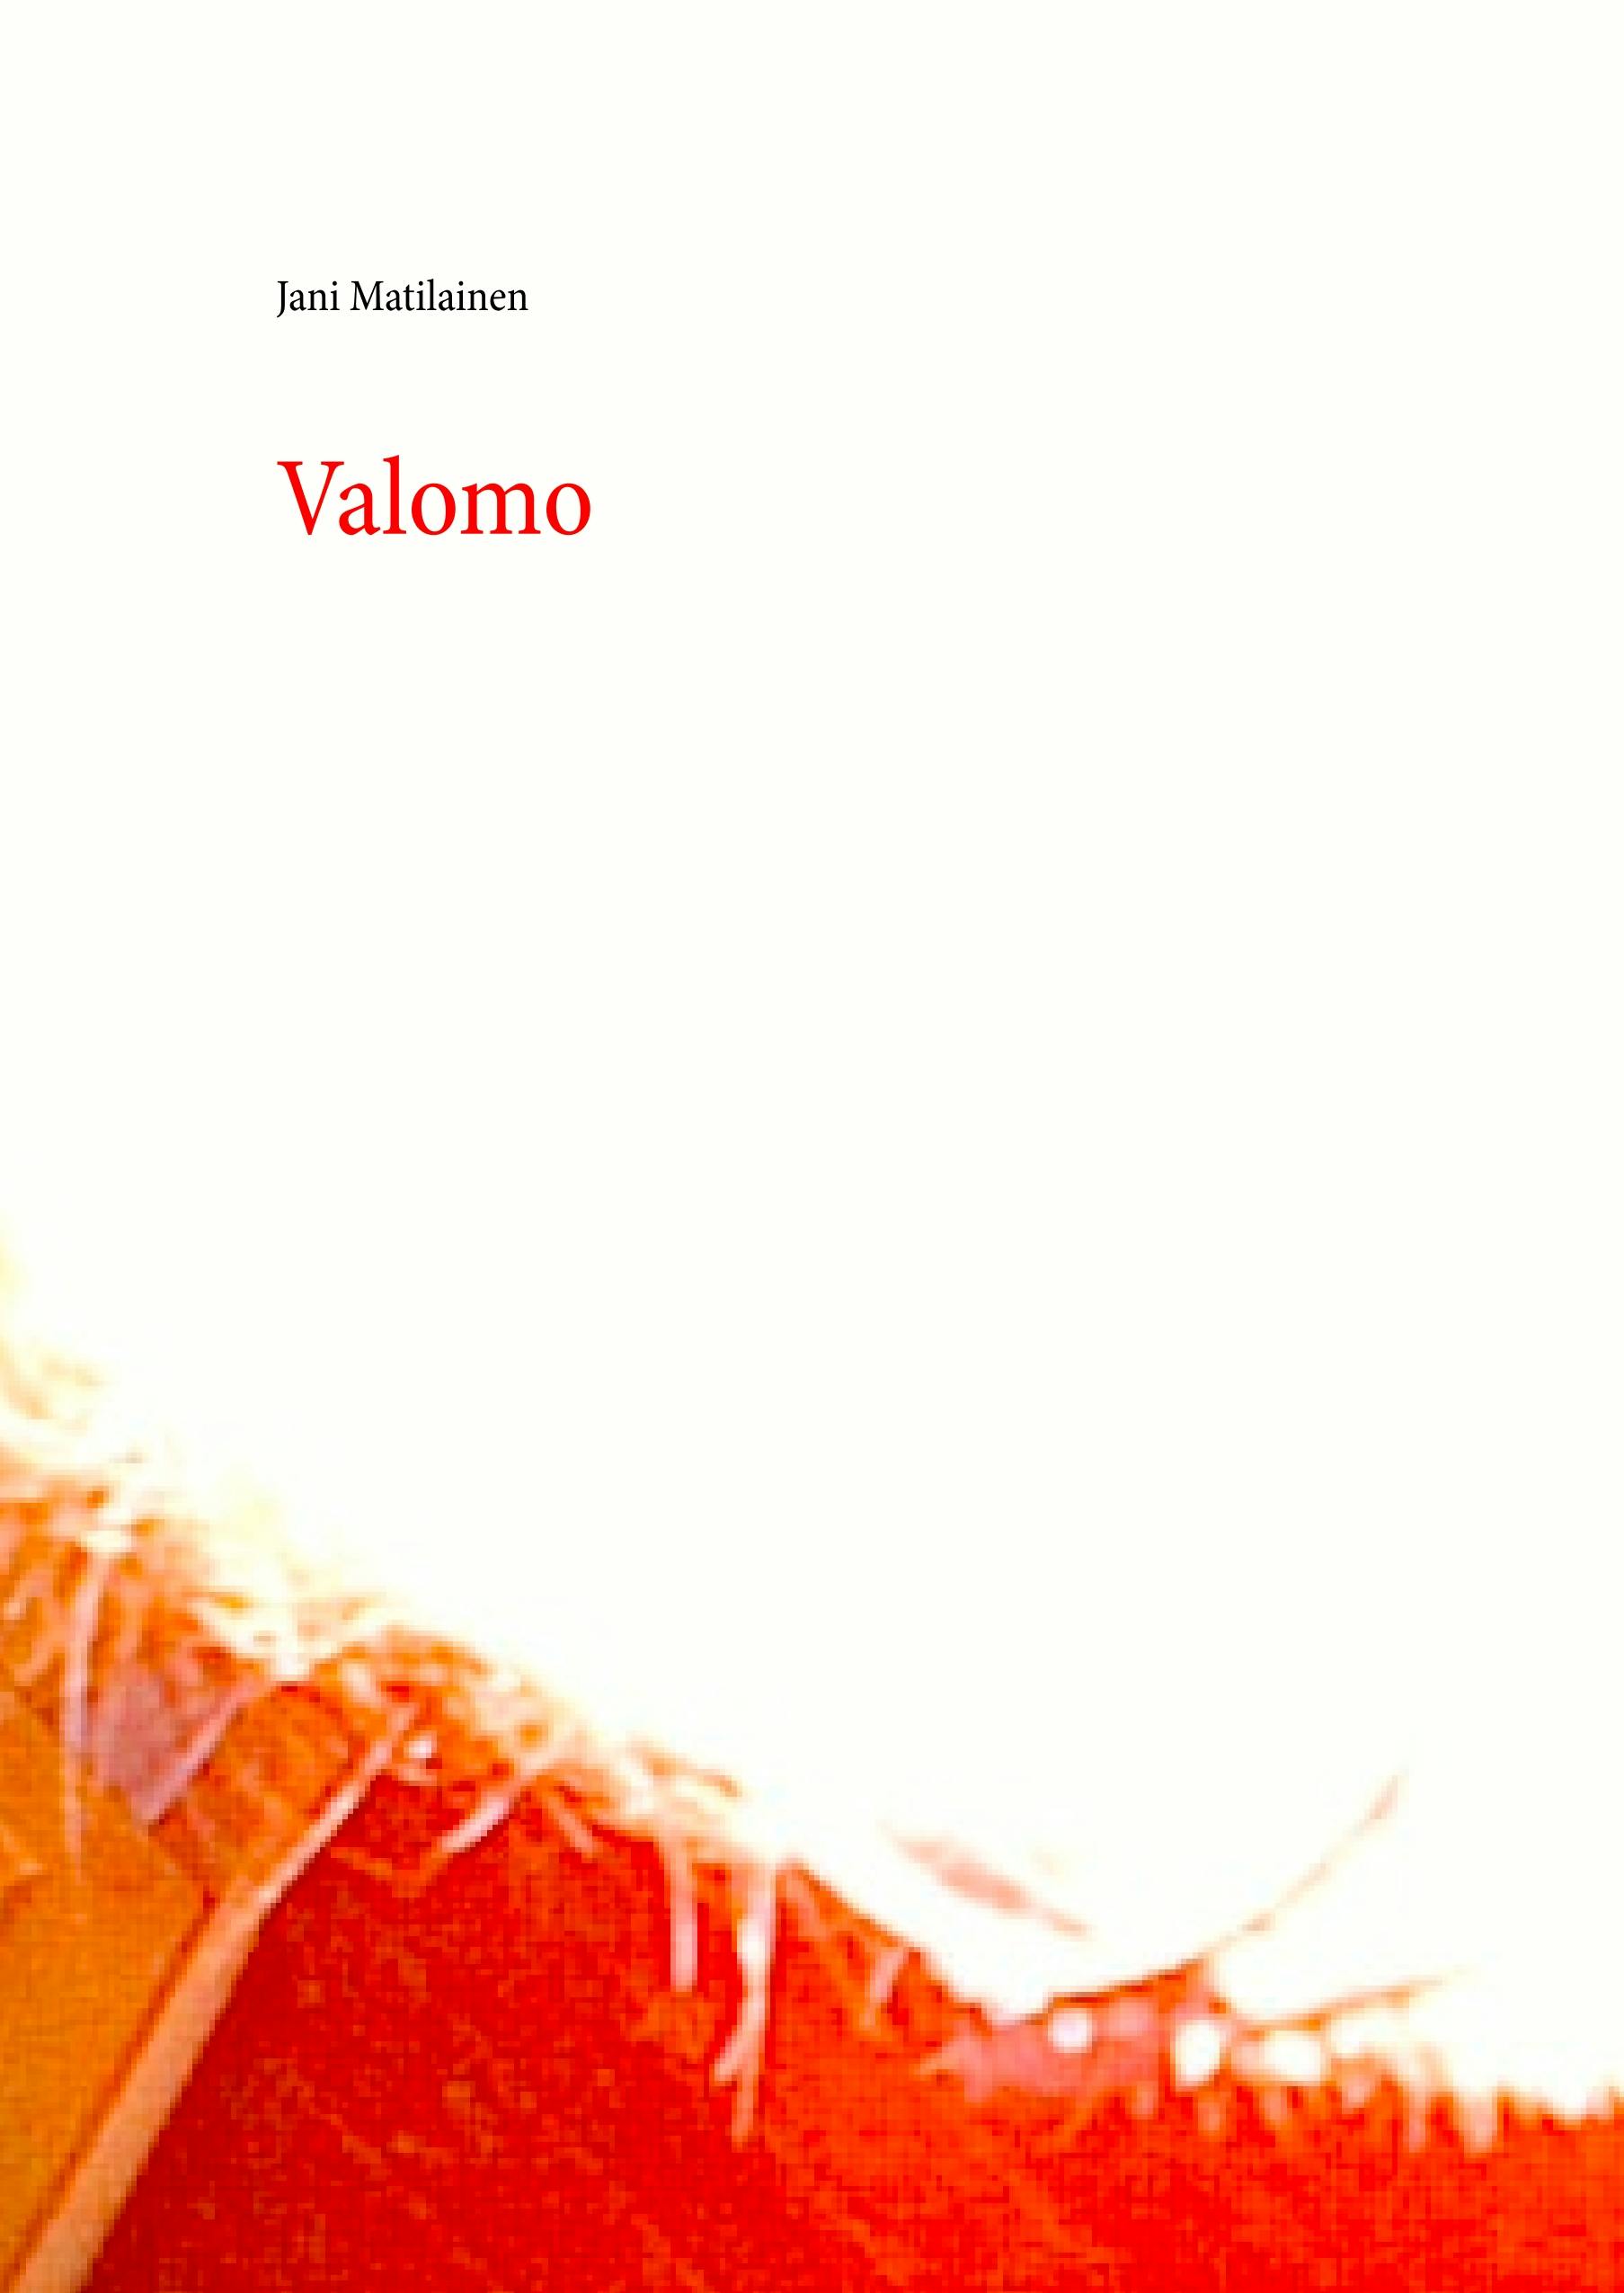 Valomo - undefined